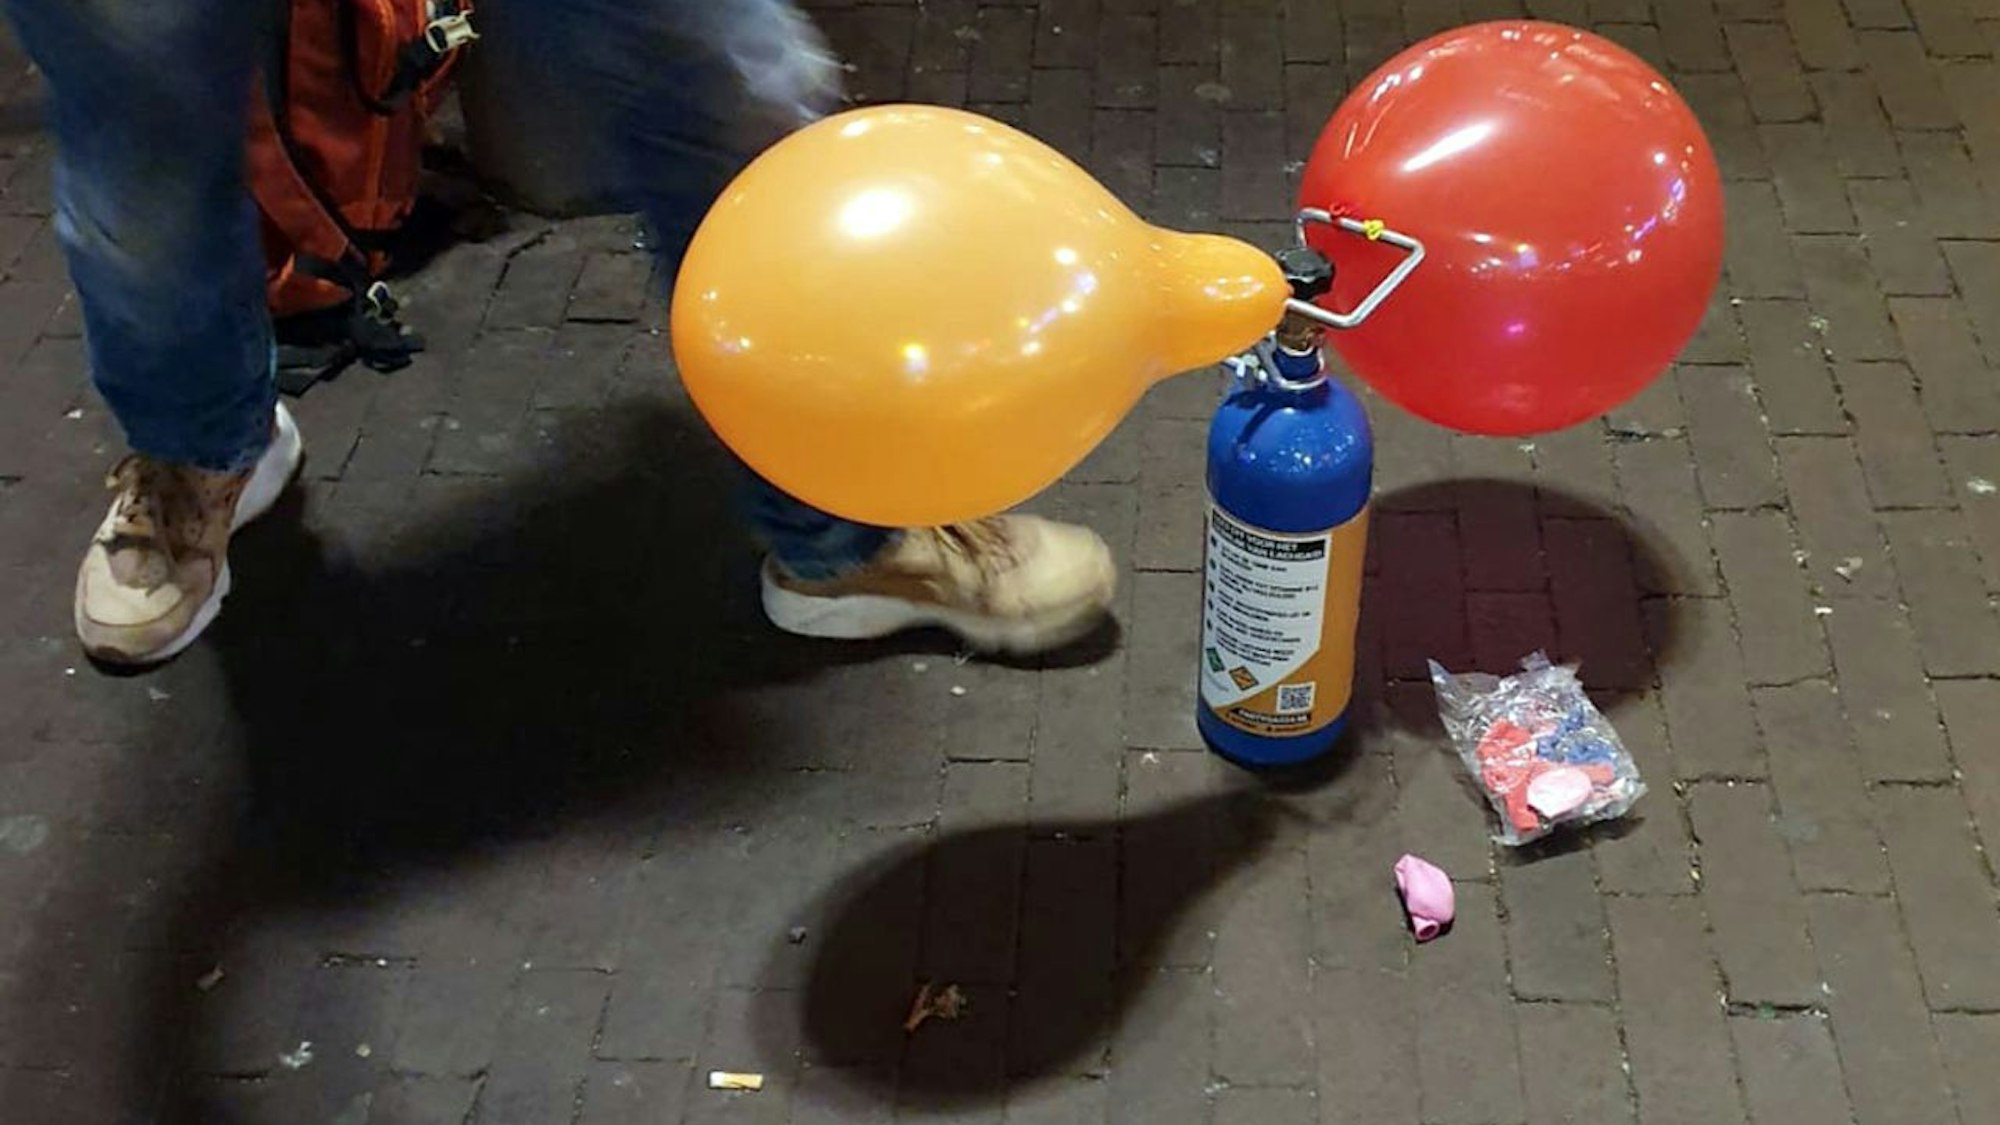 Auf einer Straße steht eine blaue Gaskartusche, an der sich ein gelber und ein roter Luftballon befinden. Die Ballons werden an Ort und Stelle aufgeblasen und die Kunden inhalieren anschließend das Lachgas aus ihnen.